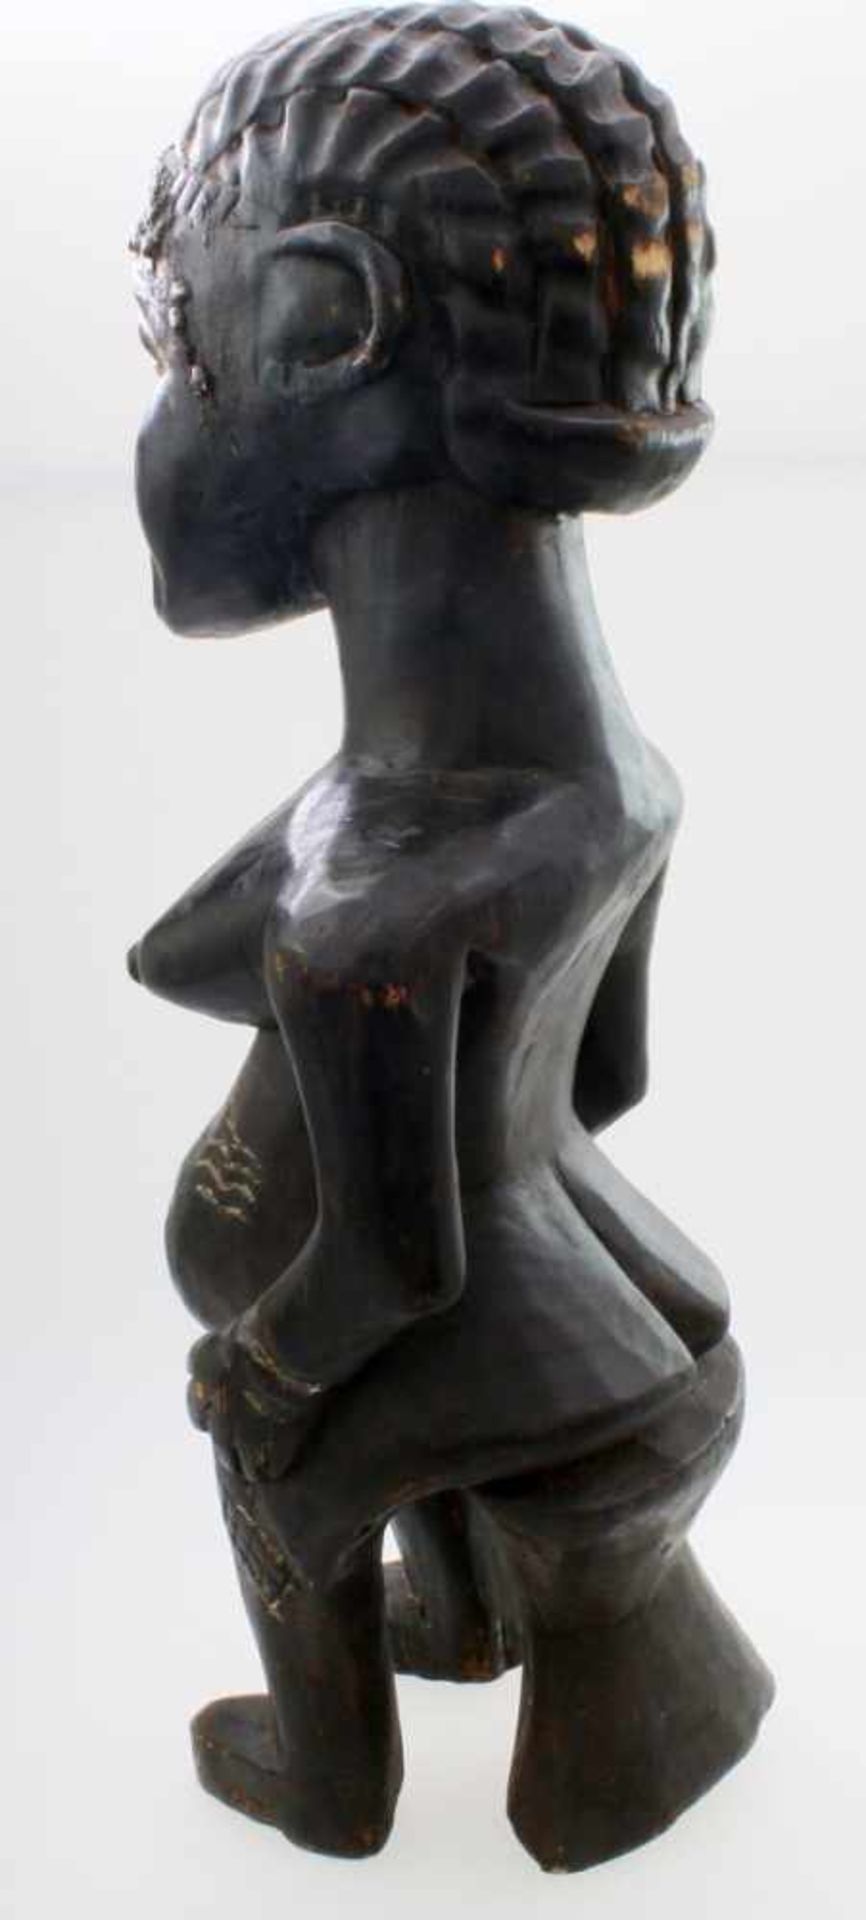 Westafrika - Große Ahnenfigur Schwarz / braun gefärbtes Tropenholz. Auf Stütze sitzende Figur, - Bild 3 aus 6